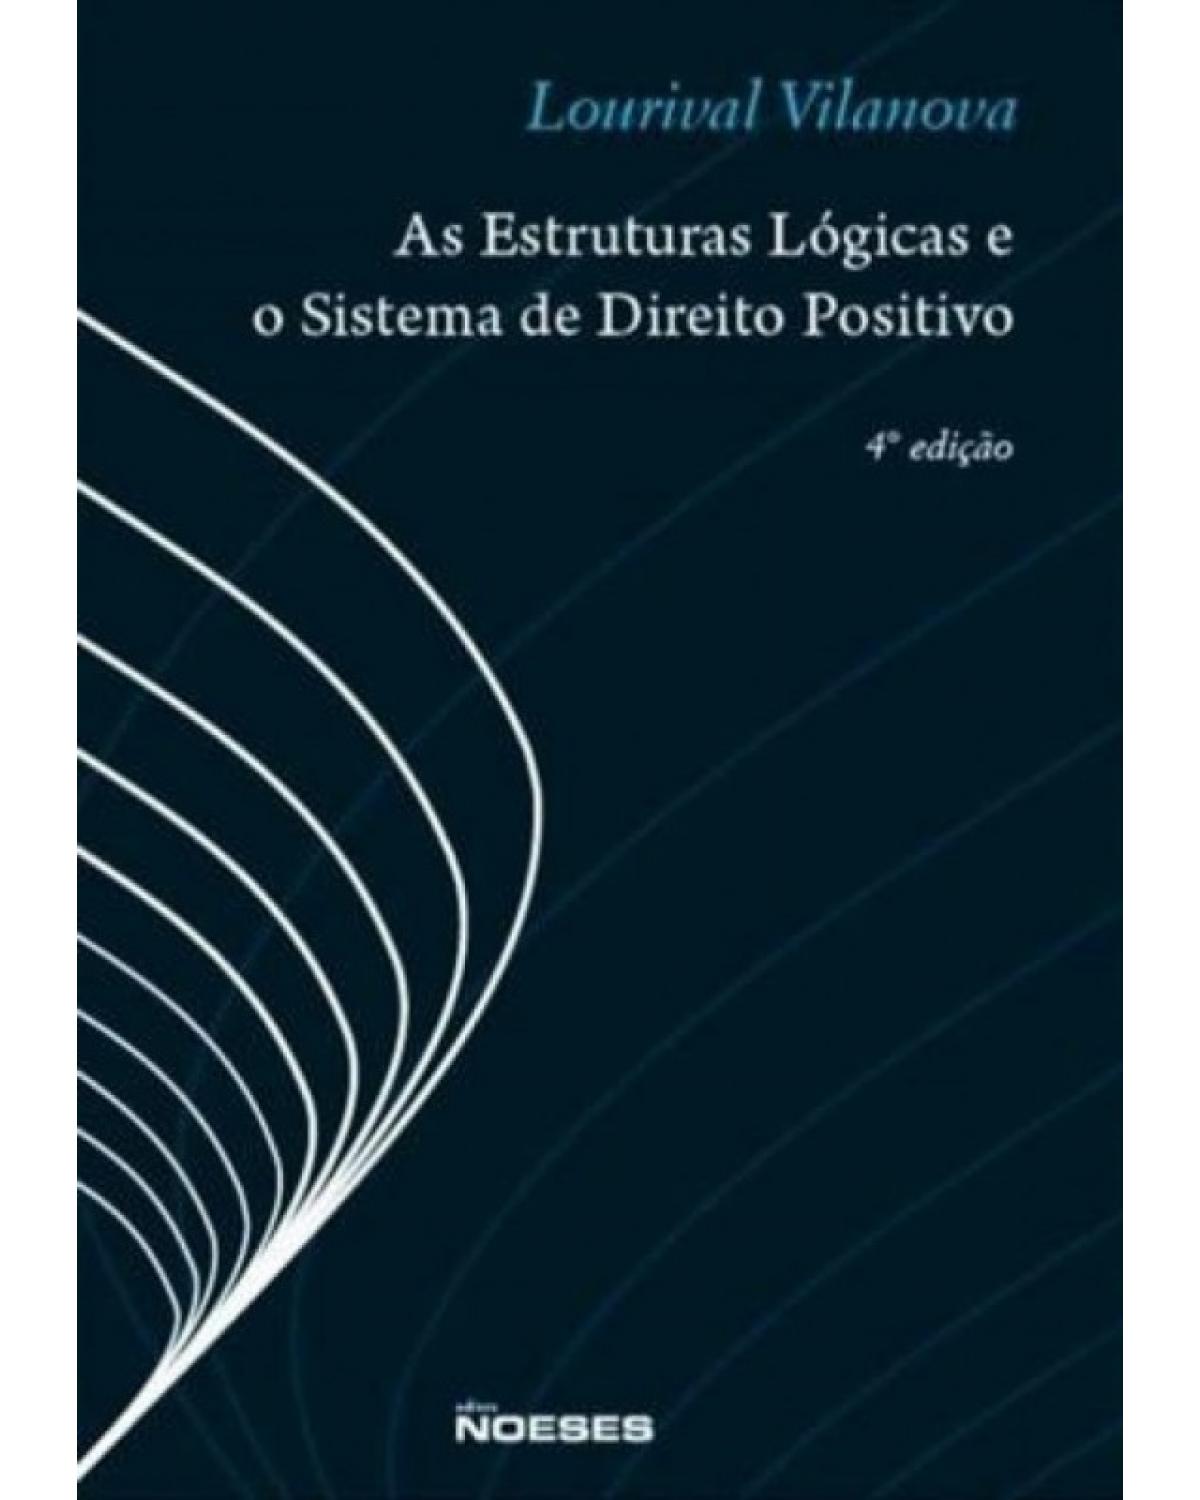 As estruturas lógicas e o sistema de direito positivo - 4ª Edição | 2010